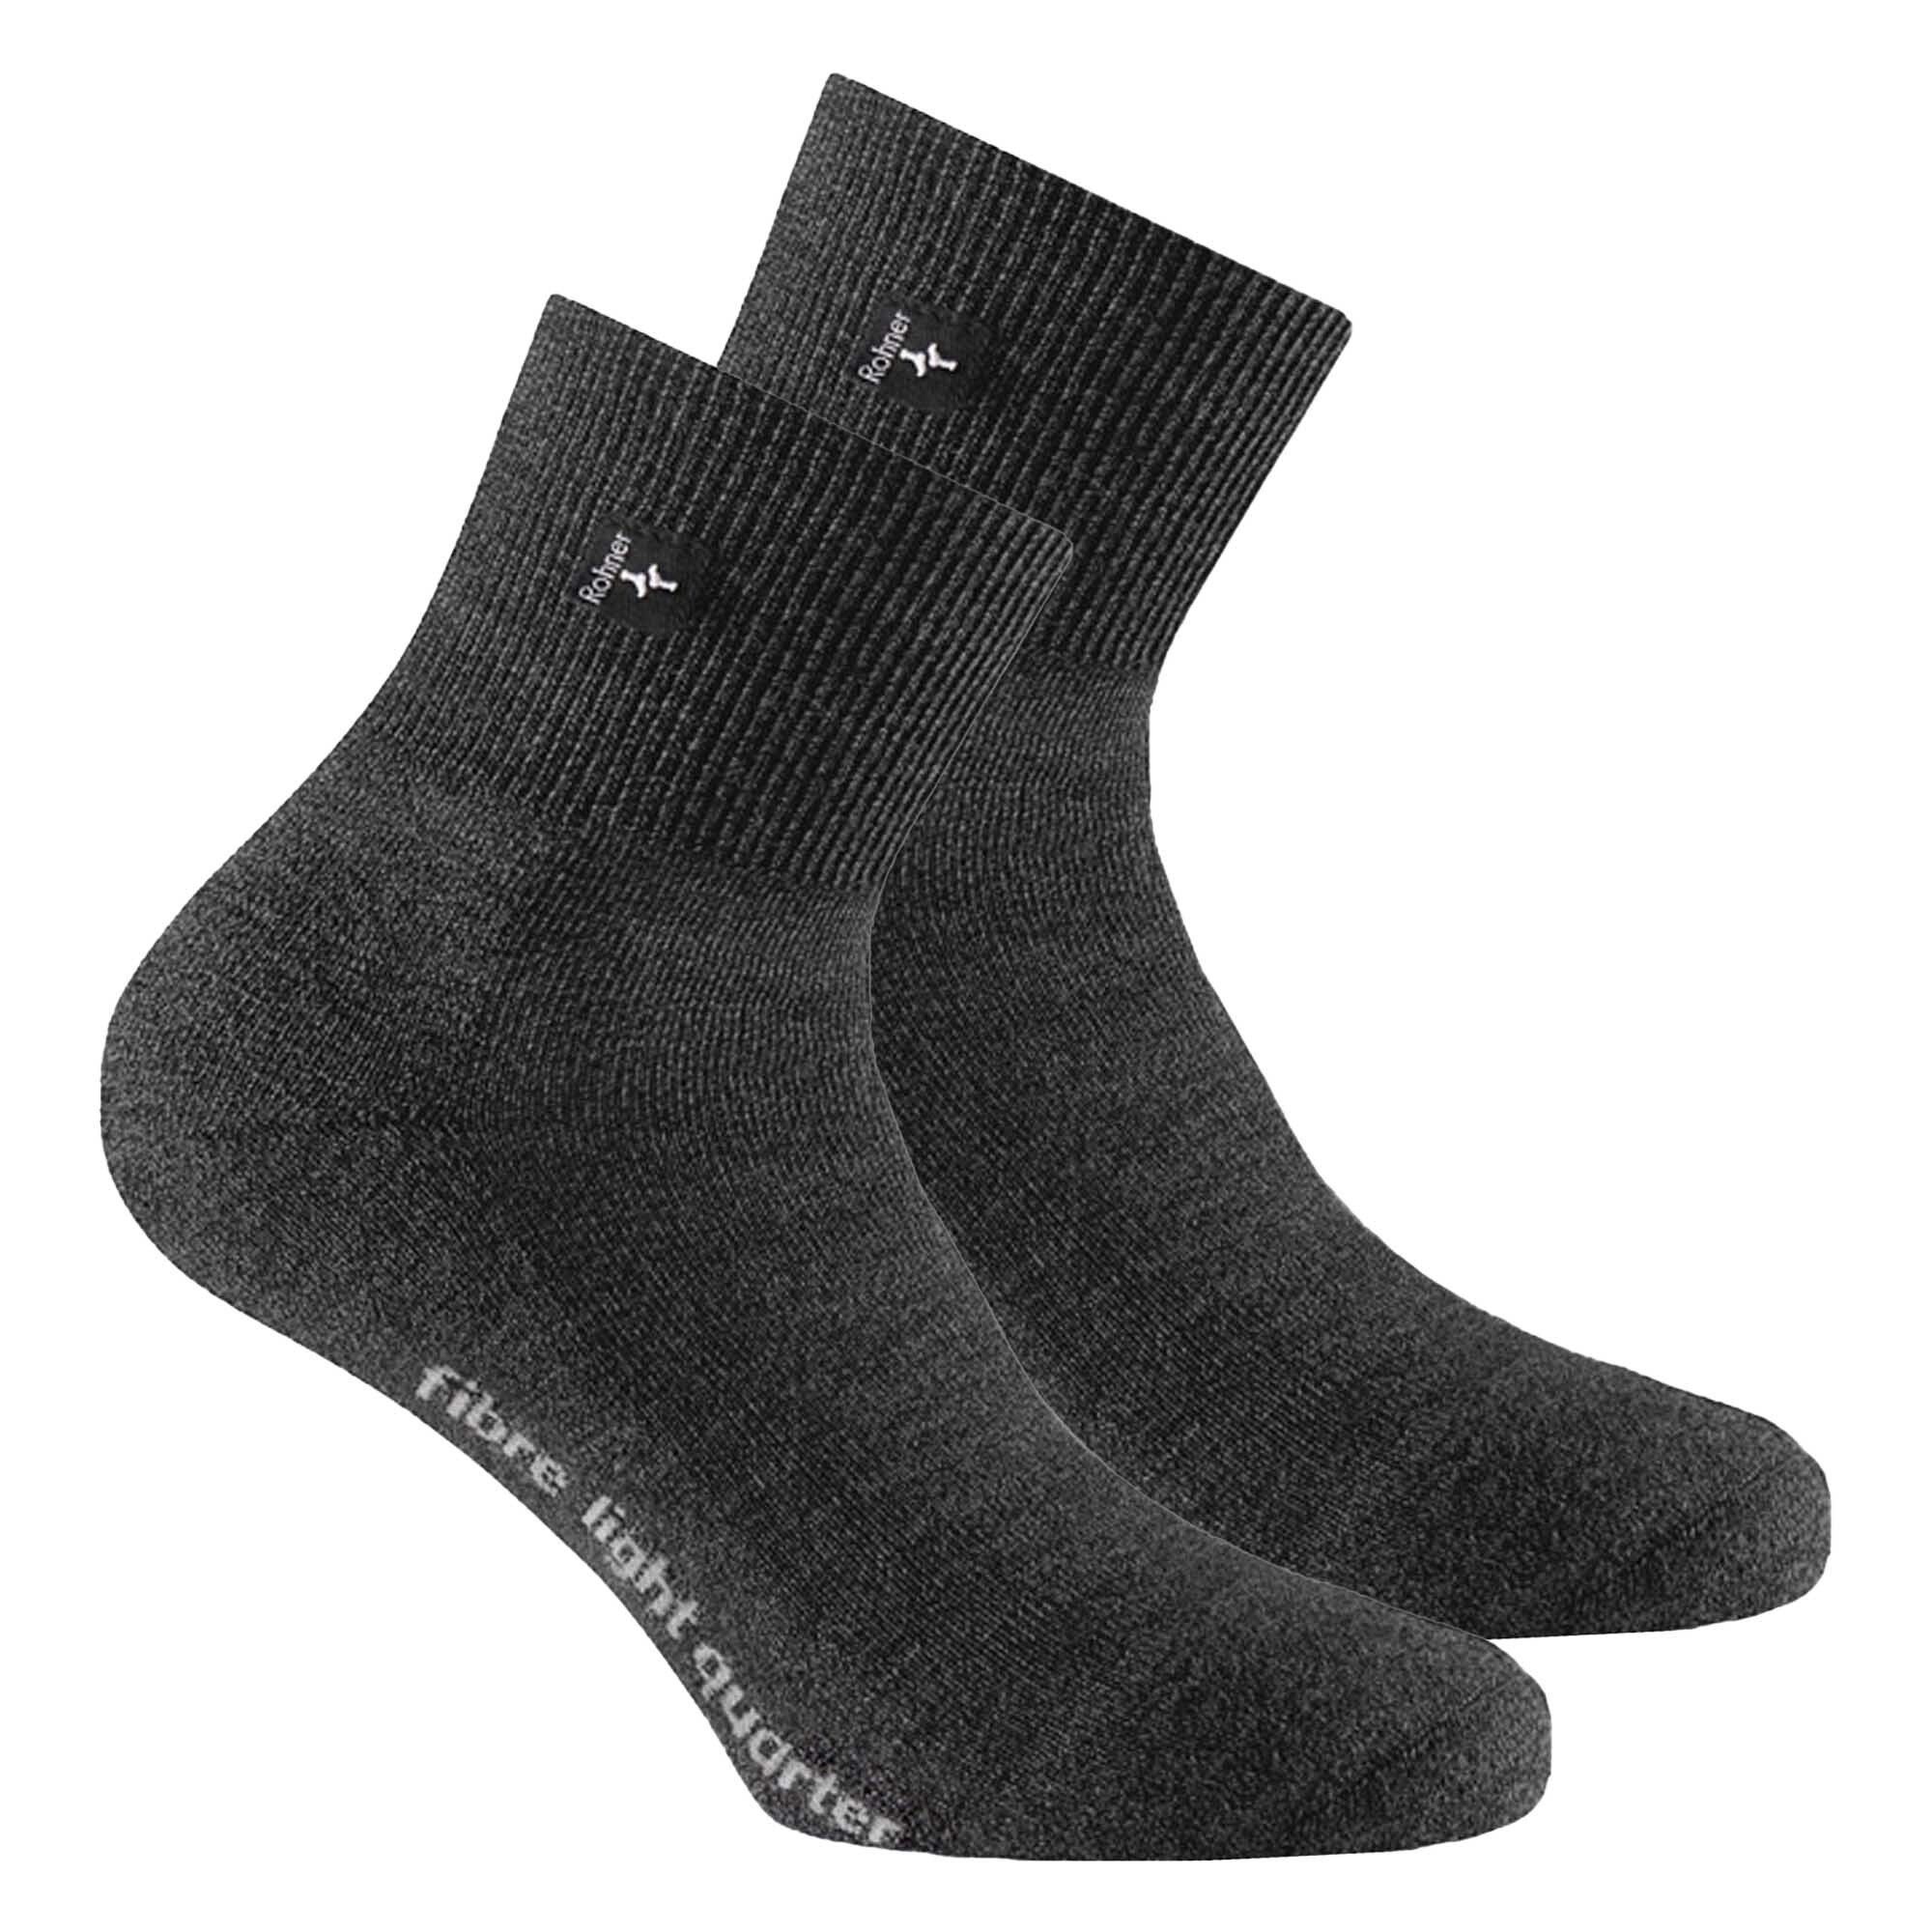 Socken Rohner Quarter Socks 2er Trekking Anthrazit - Unisex Sportsocken Pack Fibre